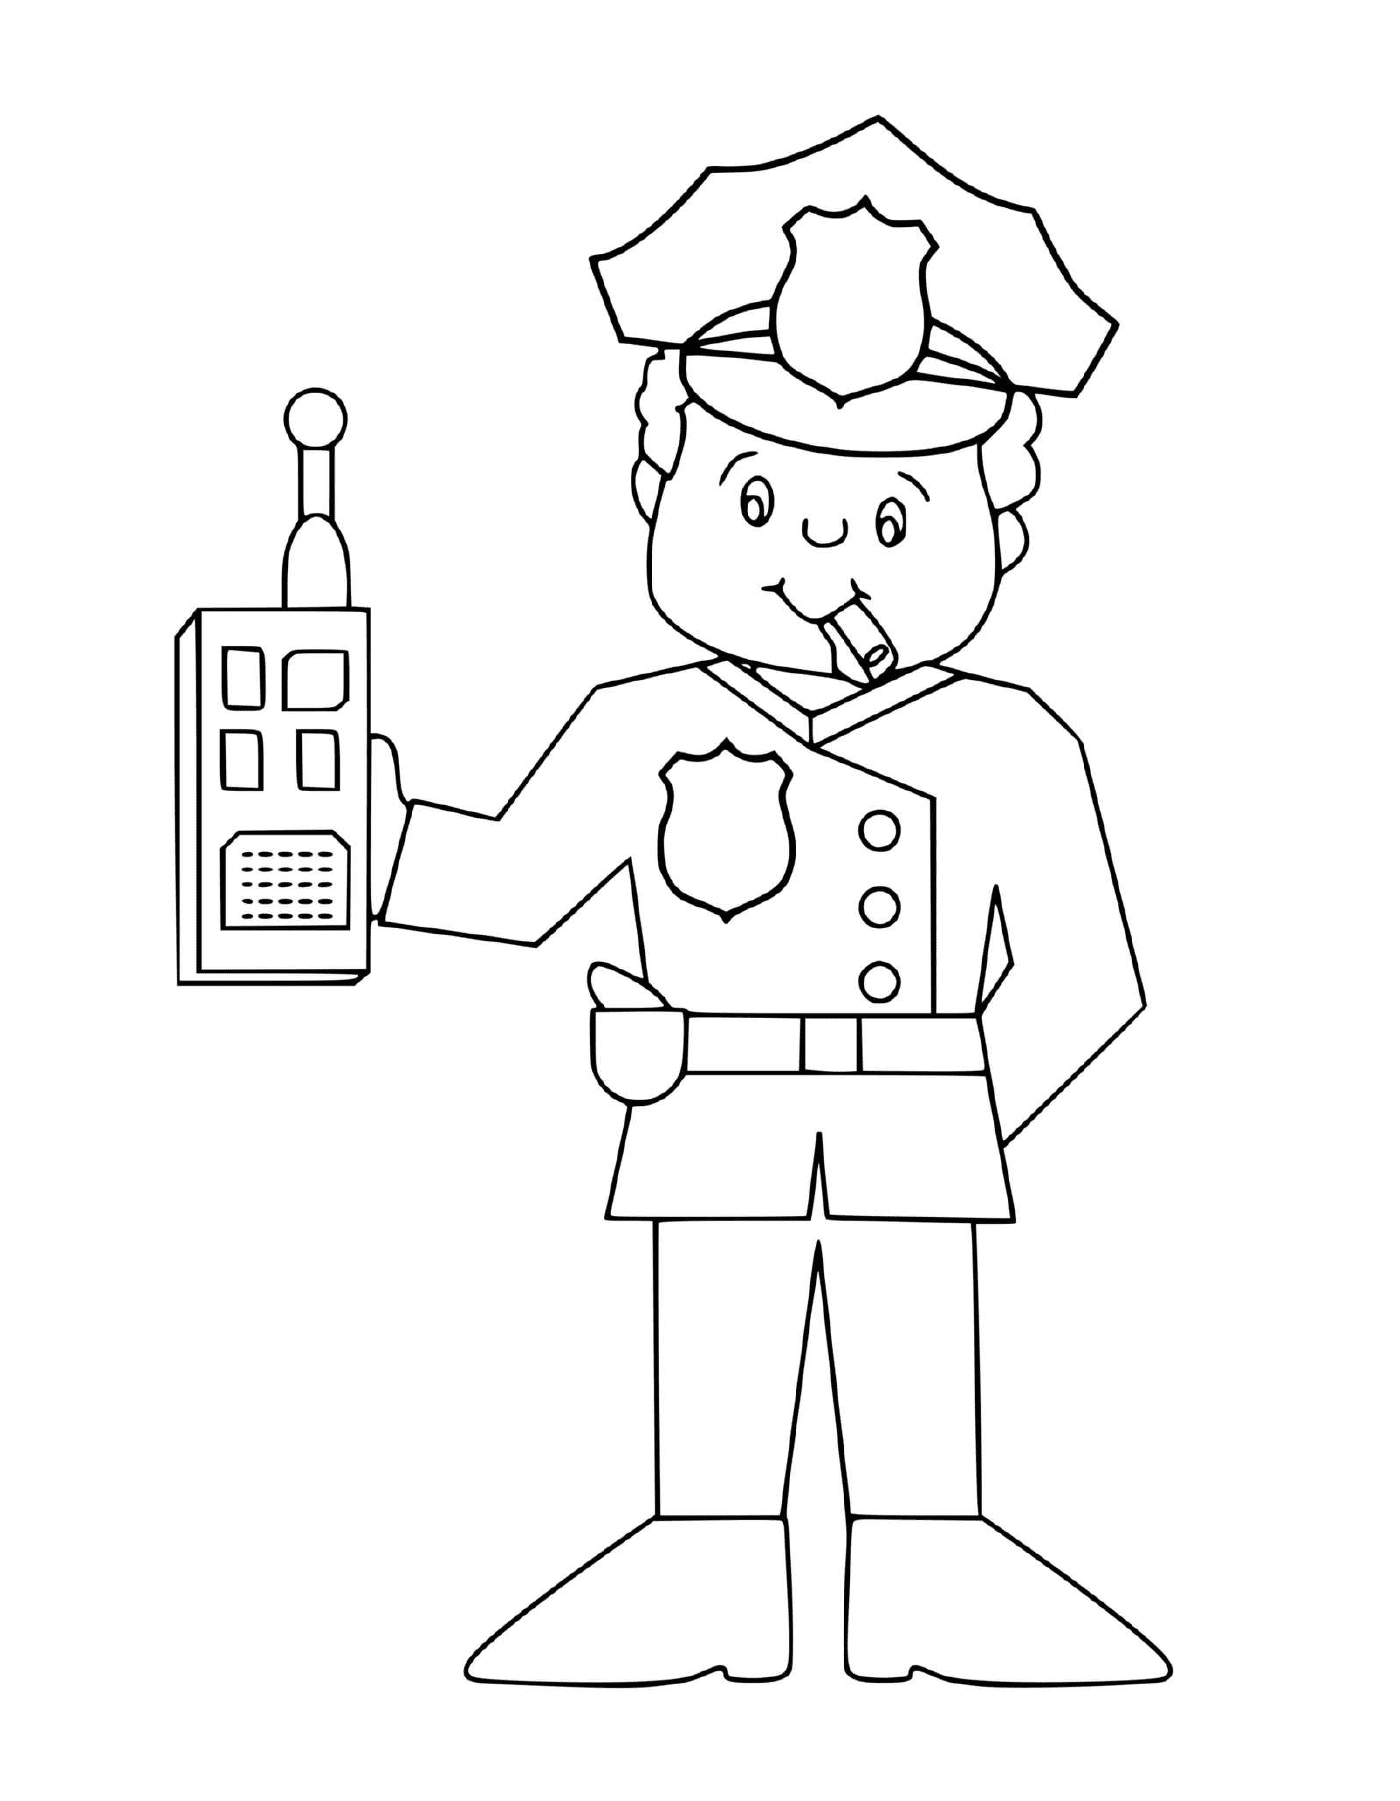  Polizist mit tragbarem Funkgerät 